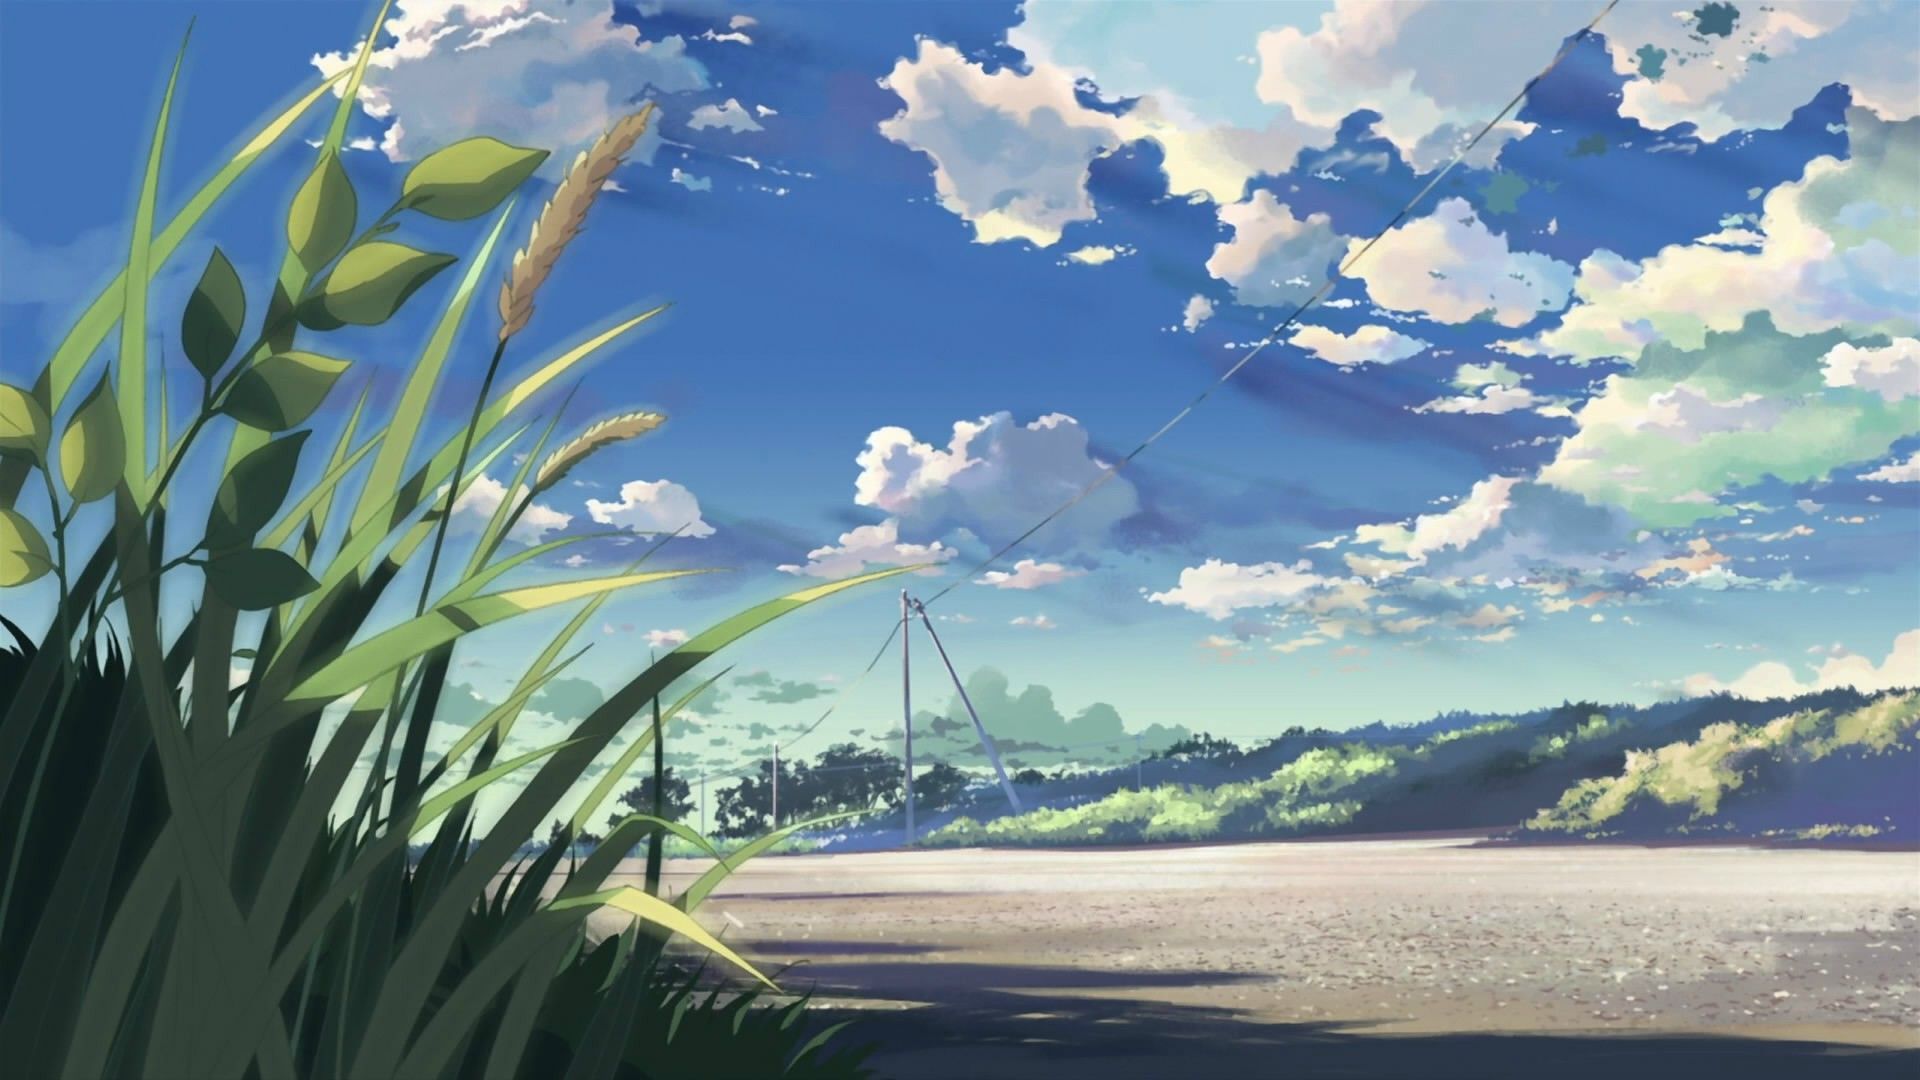 more discrete anime wallpaper!. Landscape wallpaper, Anime scenery wallpaper, Scenery wallpaper